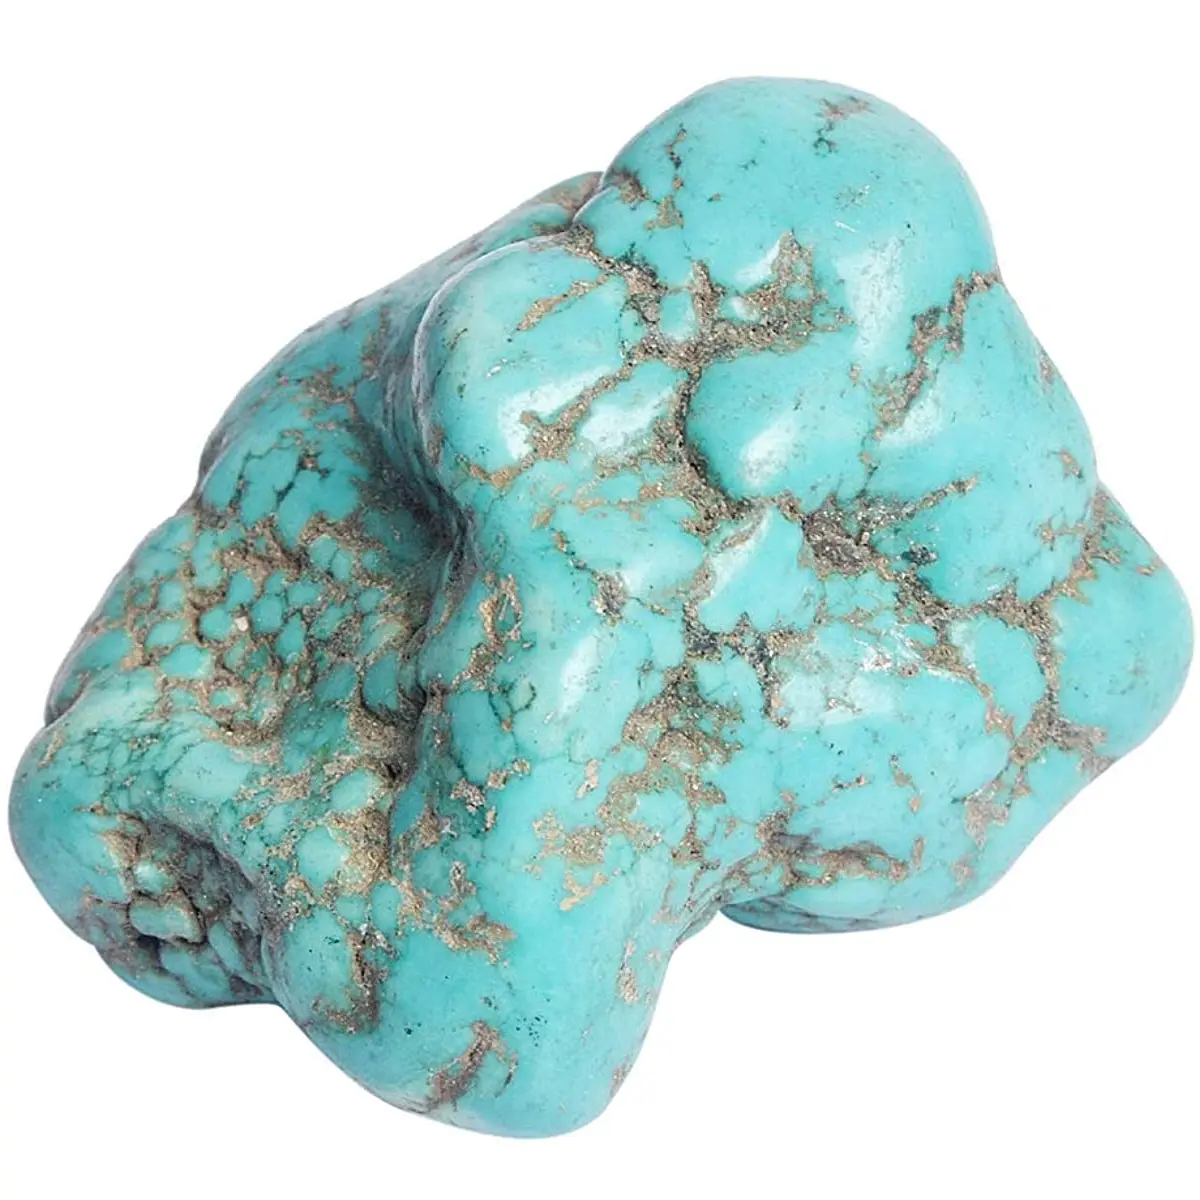 หินเทอร์ควอยซ์ธรรมชาติหินหยาบขายส่งหยาบ Rock: เทอร์ควอยซ์ธรรมชาติหยาบ: Rocks & Minerals